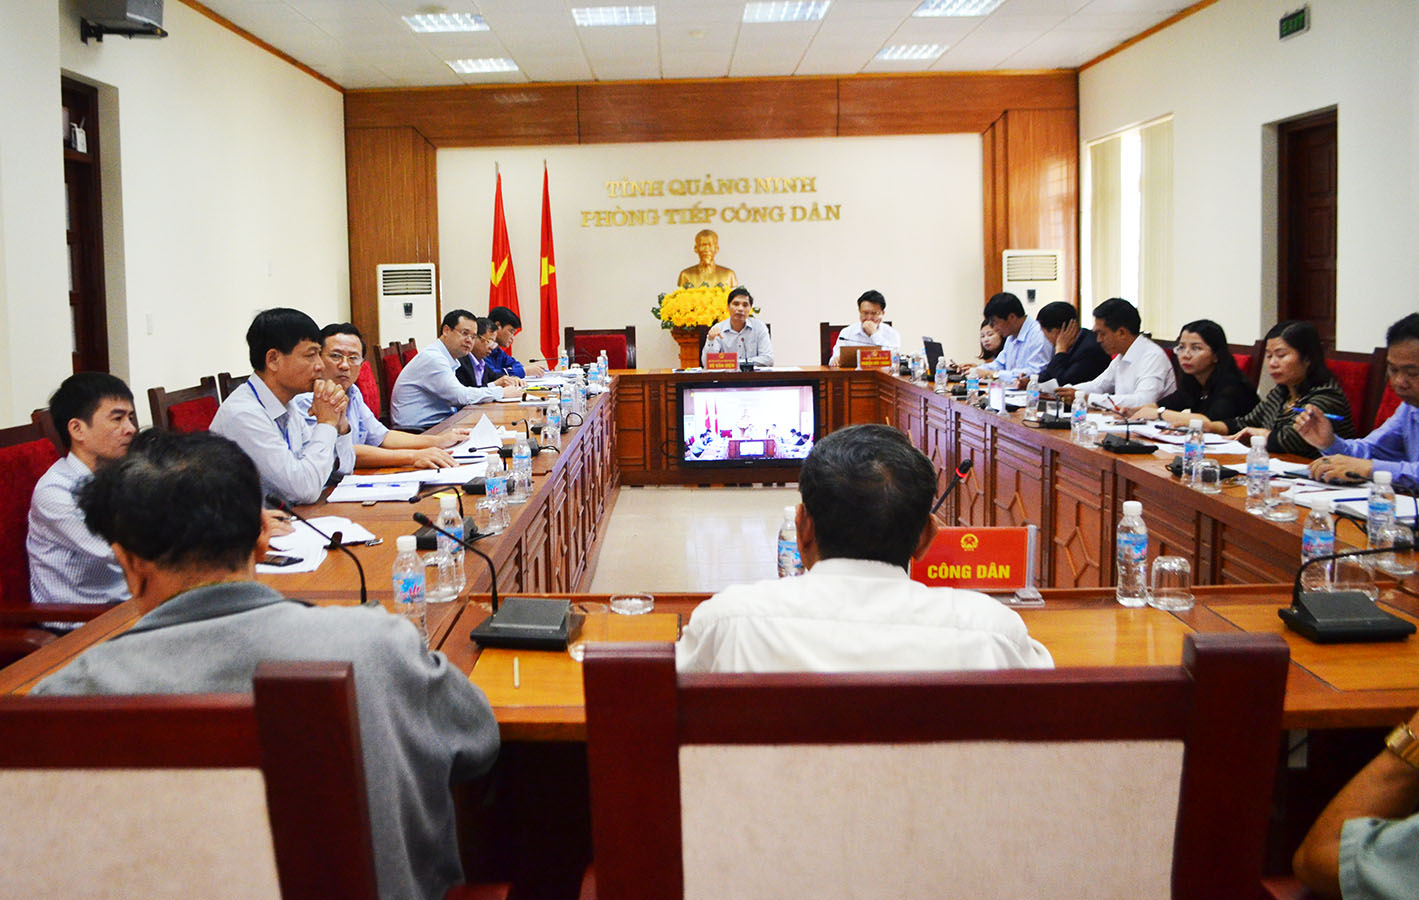 Đồng chí Vũ Văn Diện, Phó Chủ tịch UBND tỉnh chủ trì buổi tiếp công dân